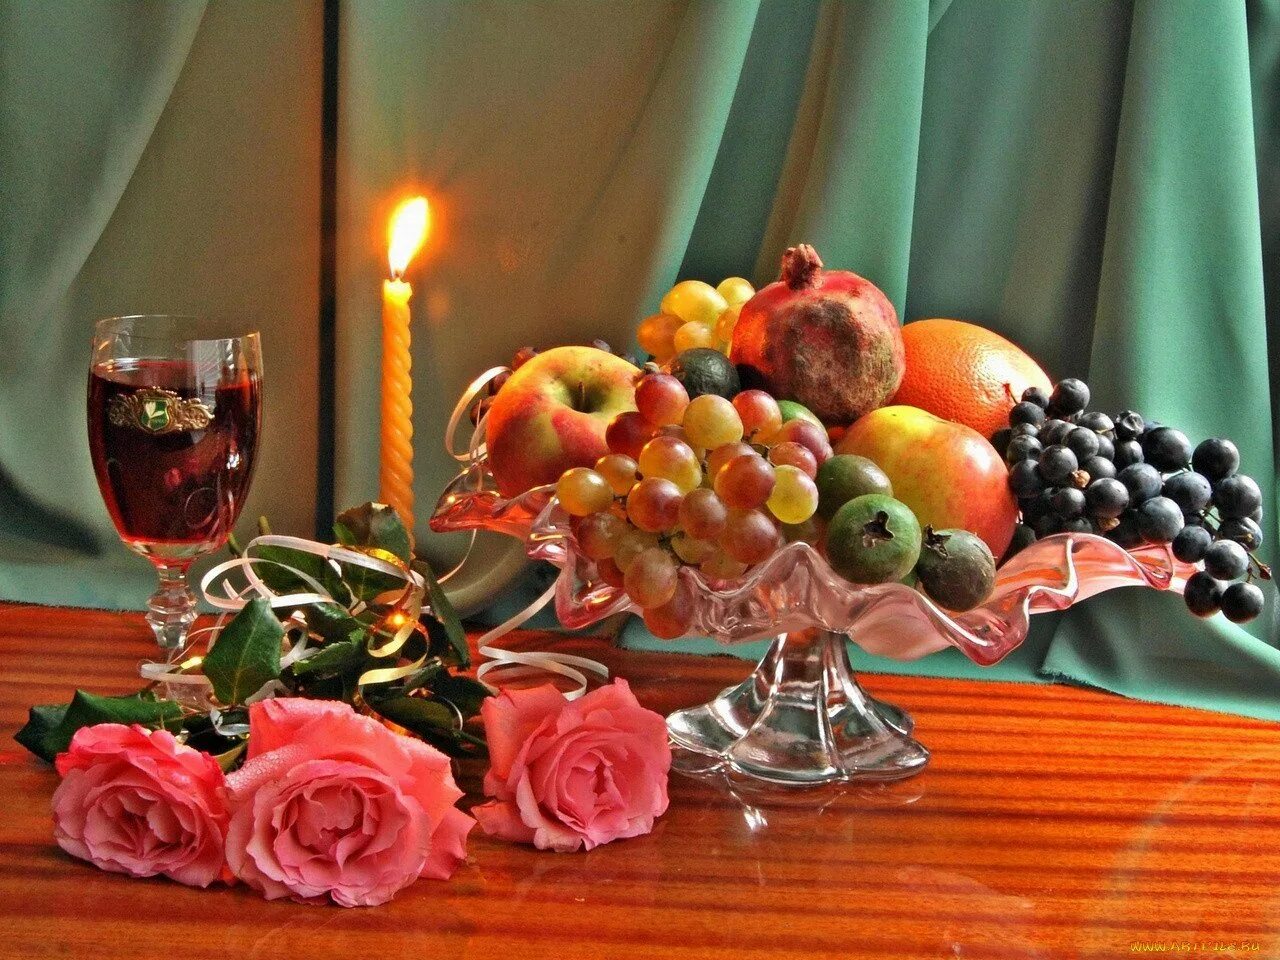 Доброго вкусного вечера. Натюрморт добрый вечер. Натюрморт с вином и фруктами. Фрукты в вазе на столе. Натюрморт с фруктами вином и свечами.